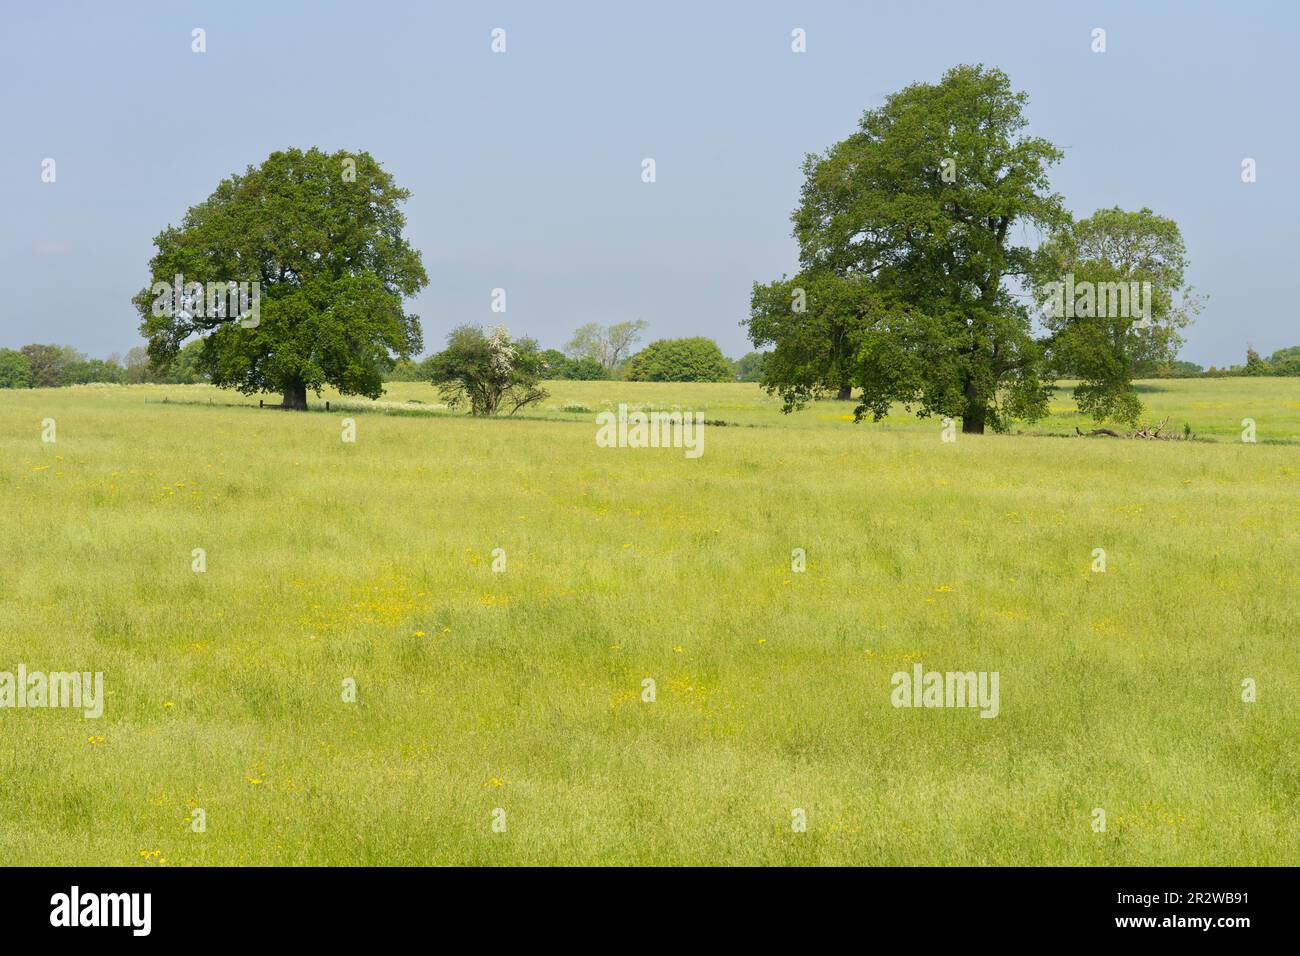 Vue sur un champ sous lequel se trouvent les ruines enterrées de la ville romaine de Silchester (Calleva Atrebatum). Hampshire, Royaume-Uni. Concept: La Grande-Bretagne romaine Banque D'Images